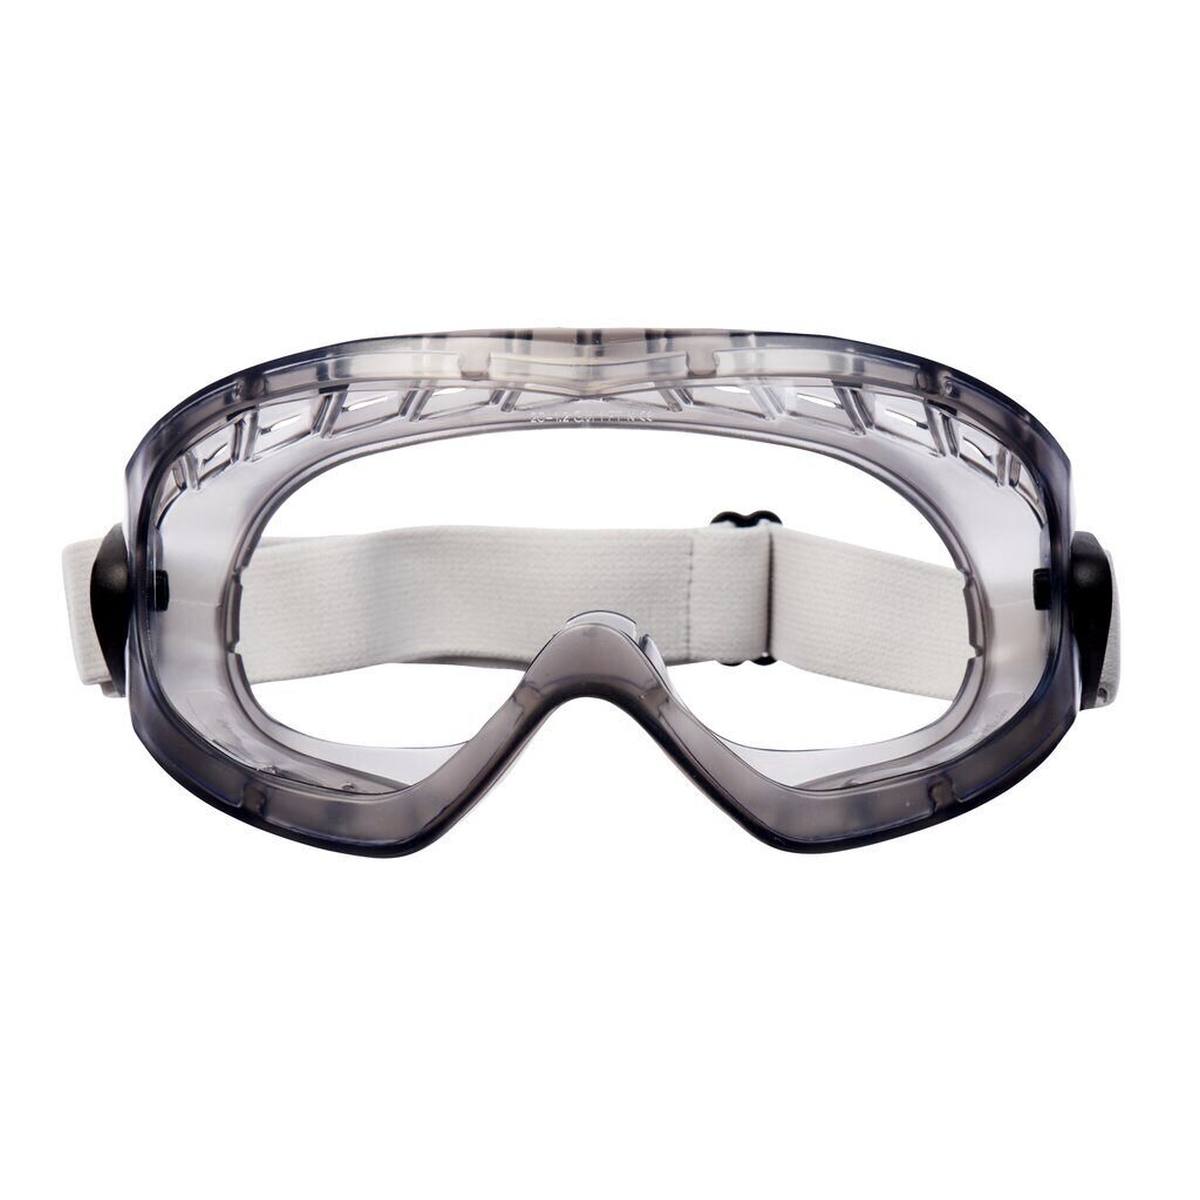 3M 2890S Gafas de visión total AS/AF/UV, PC, sin ranuras de ventilación (estancas al gas), bisagras ajustables